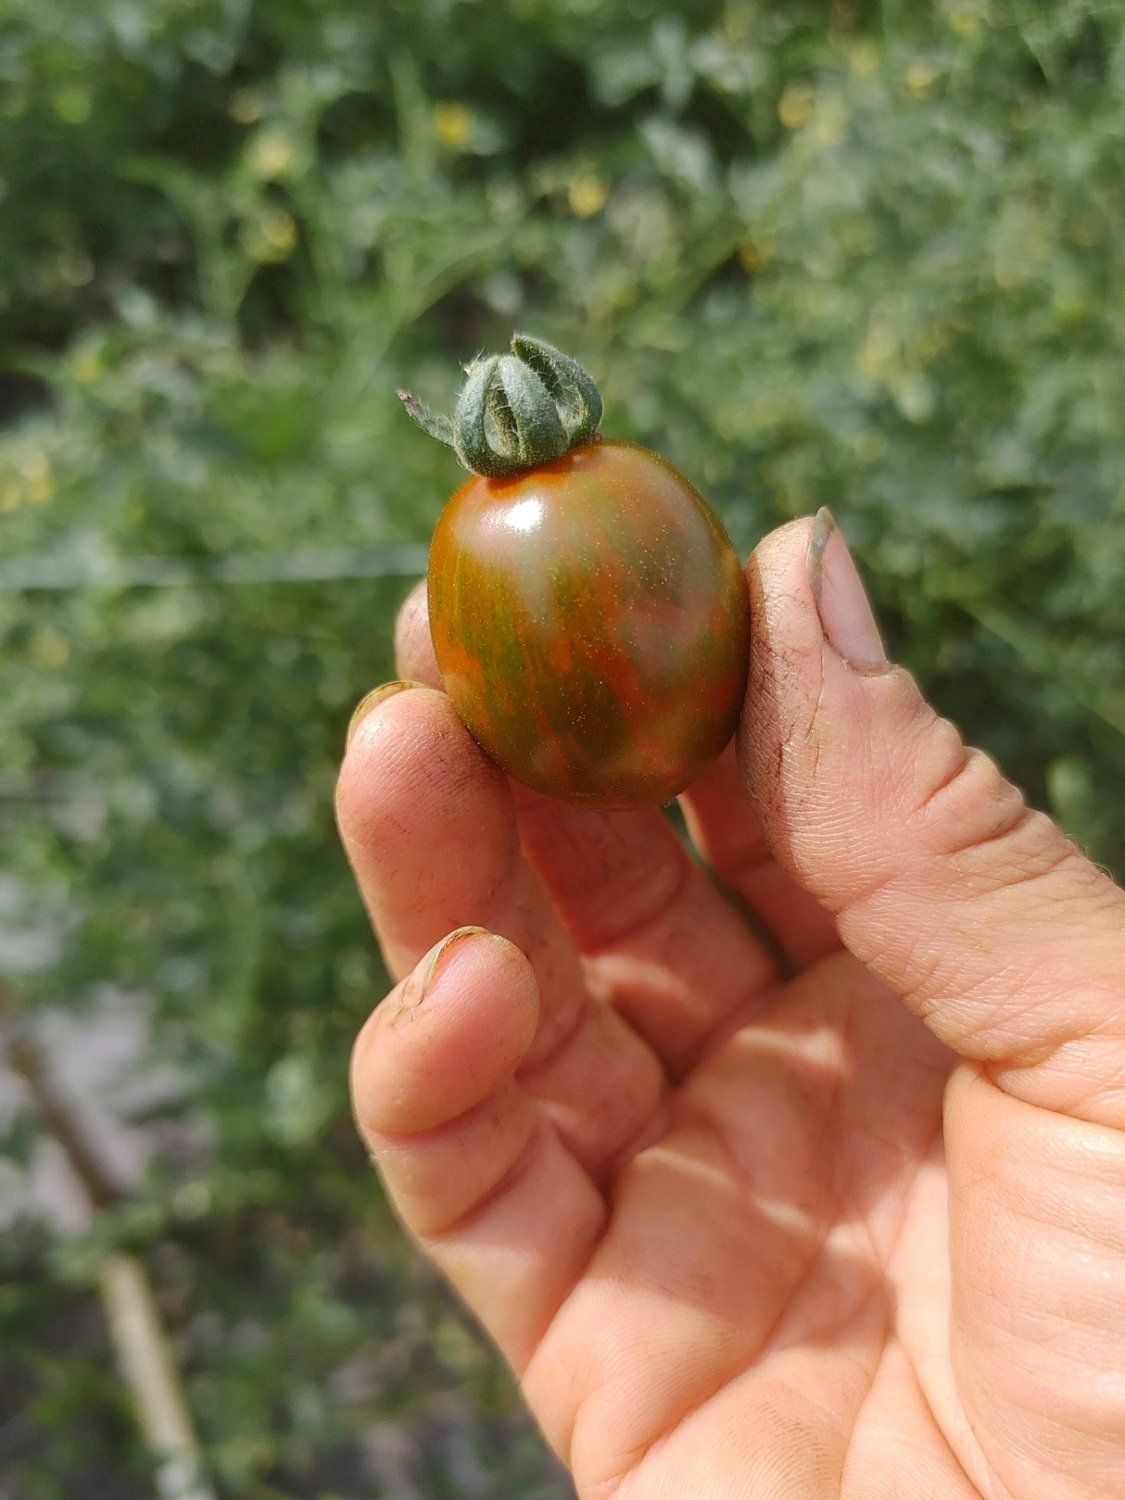 Next Happening: C'mon tomatoes...